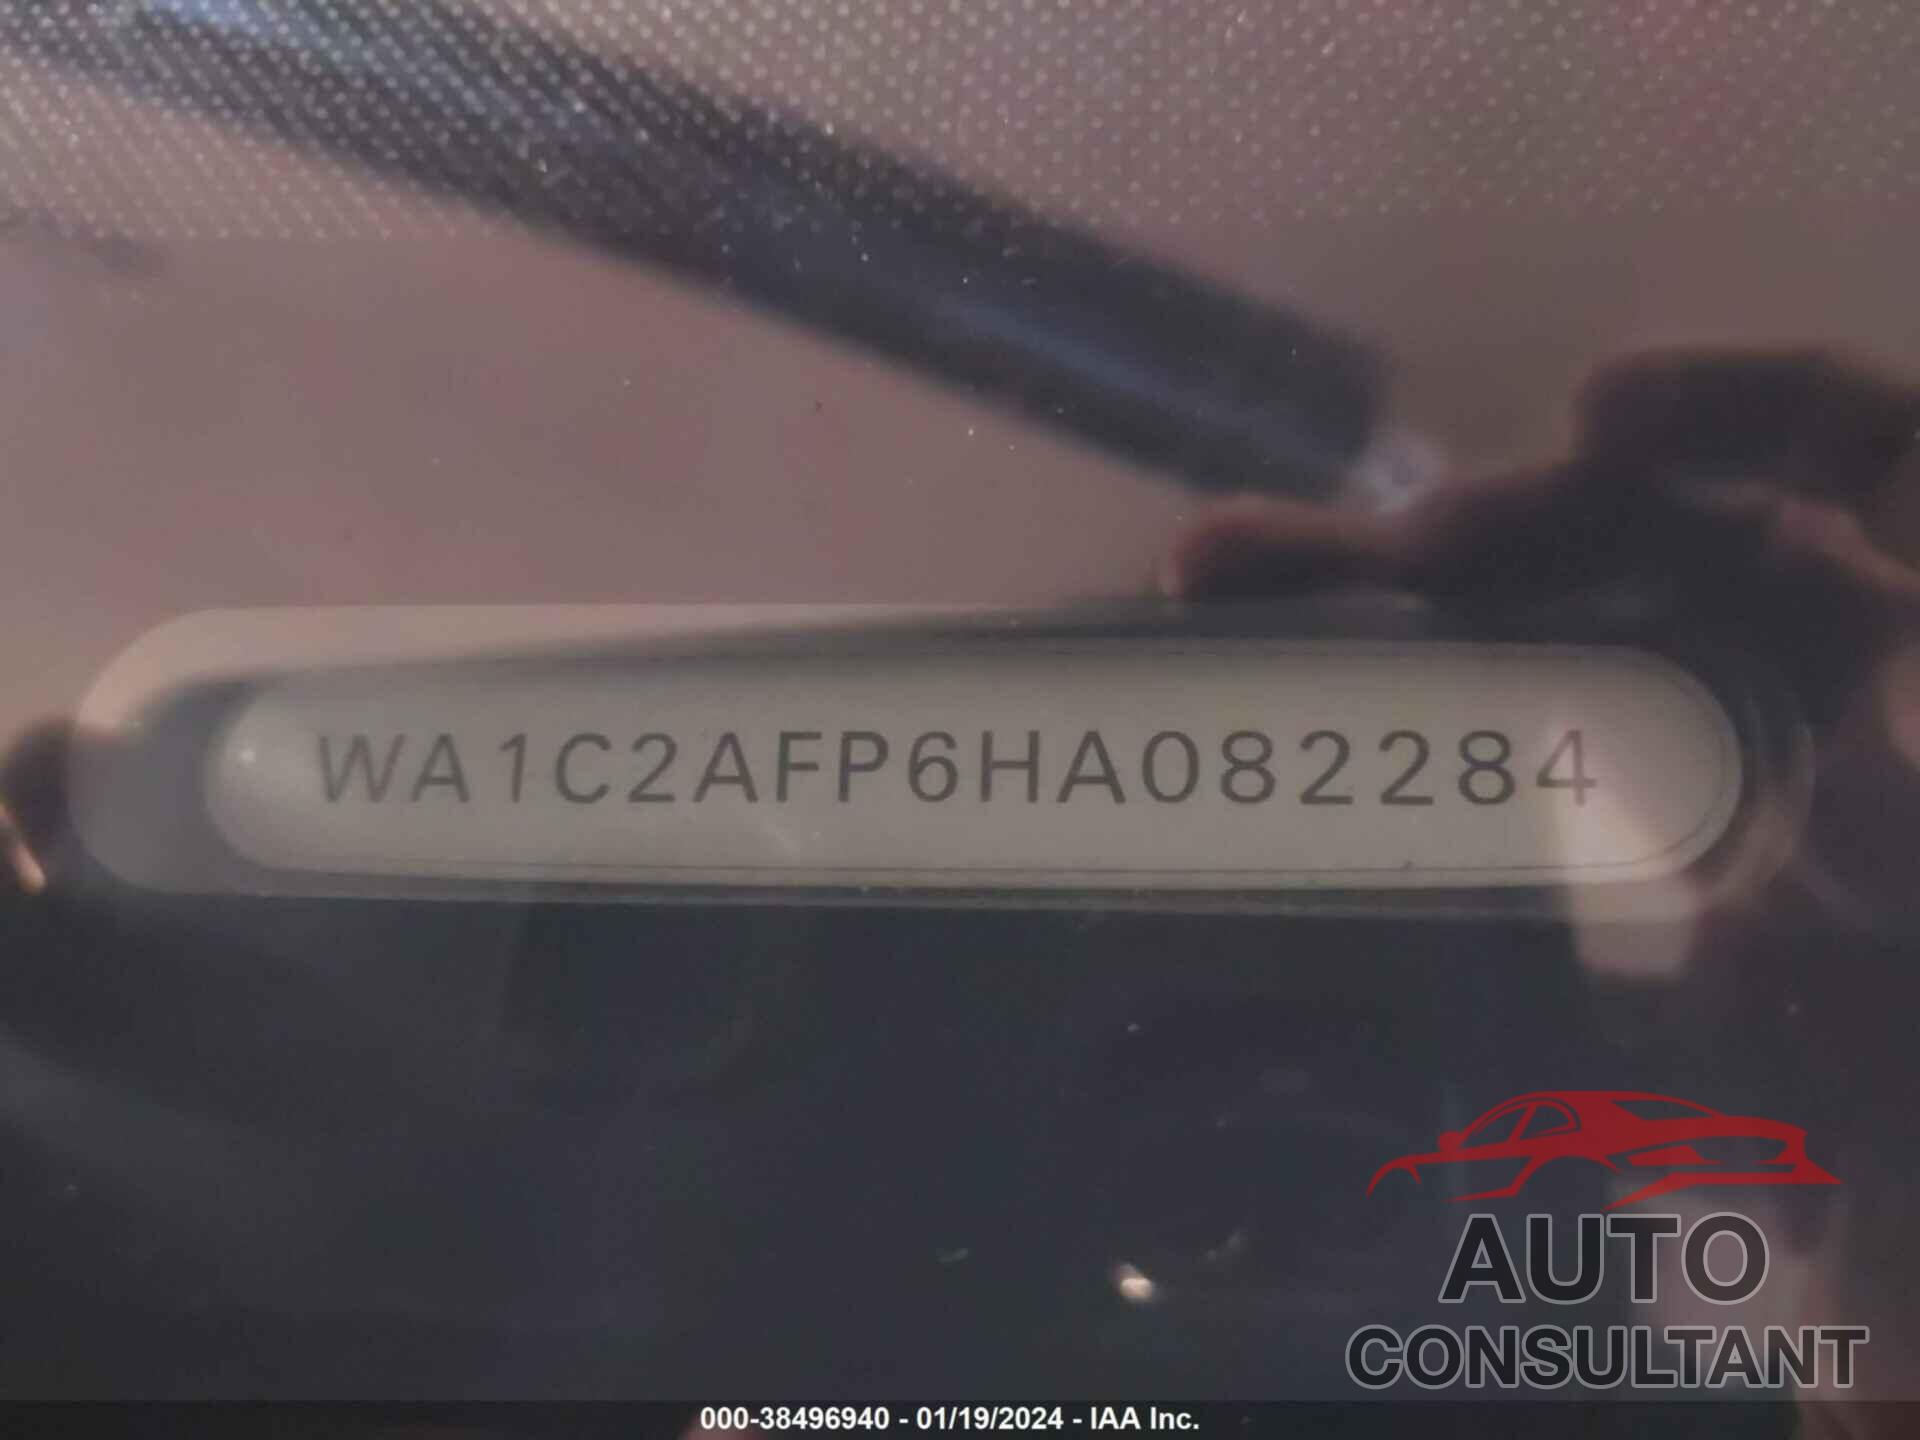 AUDI Q5 2017 - WA1C2AFP6HA082284